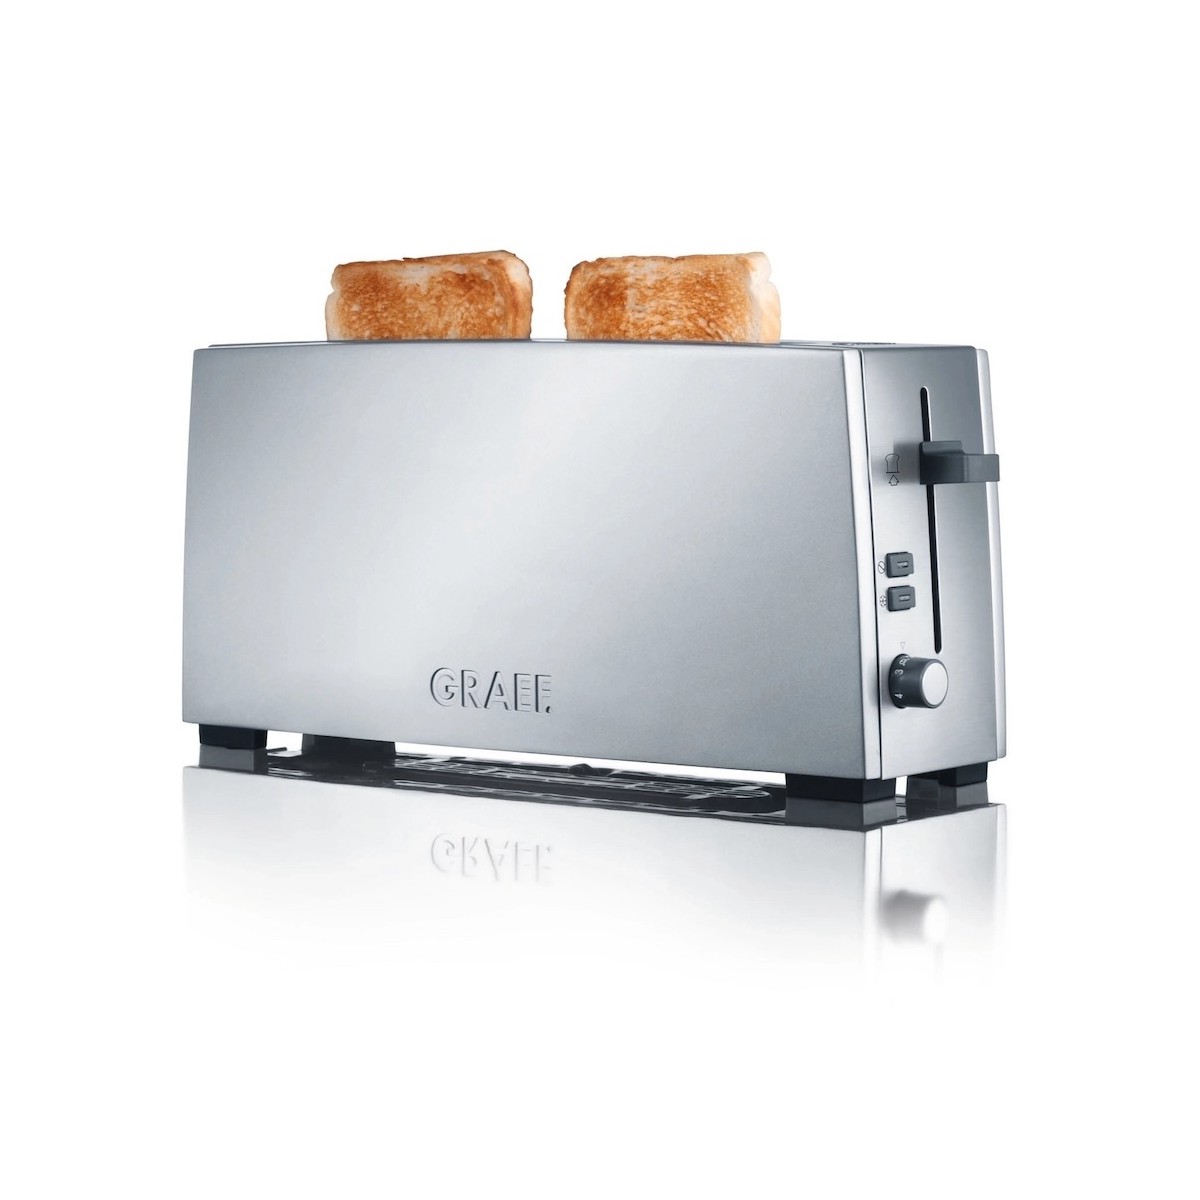 GRAEF TO90 toaster - silver